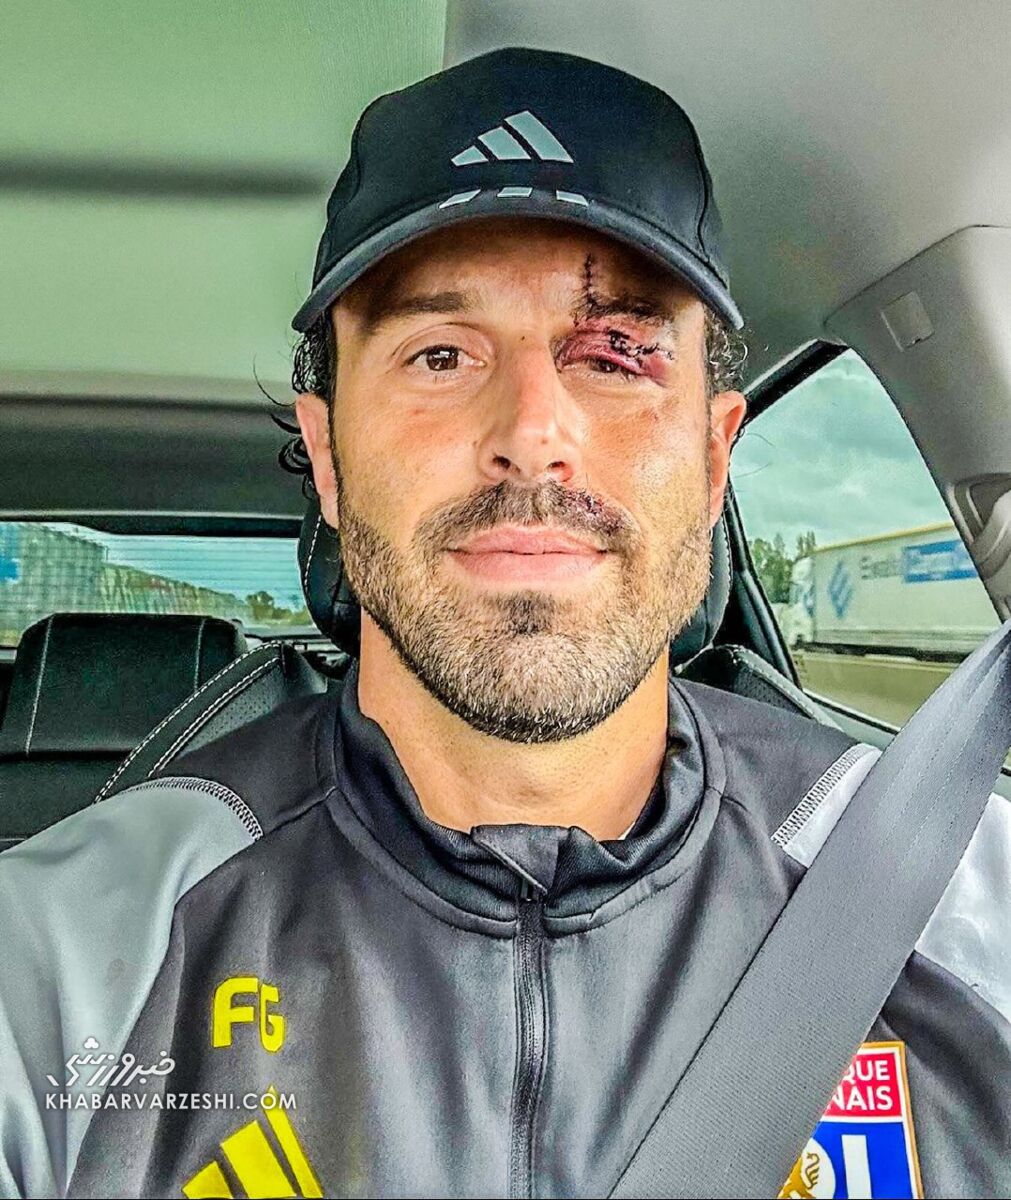 عکس| ۱۳ بخیه روی چشم سرمربی ایتالیایی/ صورت متلاشی شده یک روز پس از حمله خونین